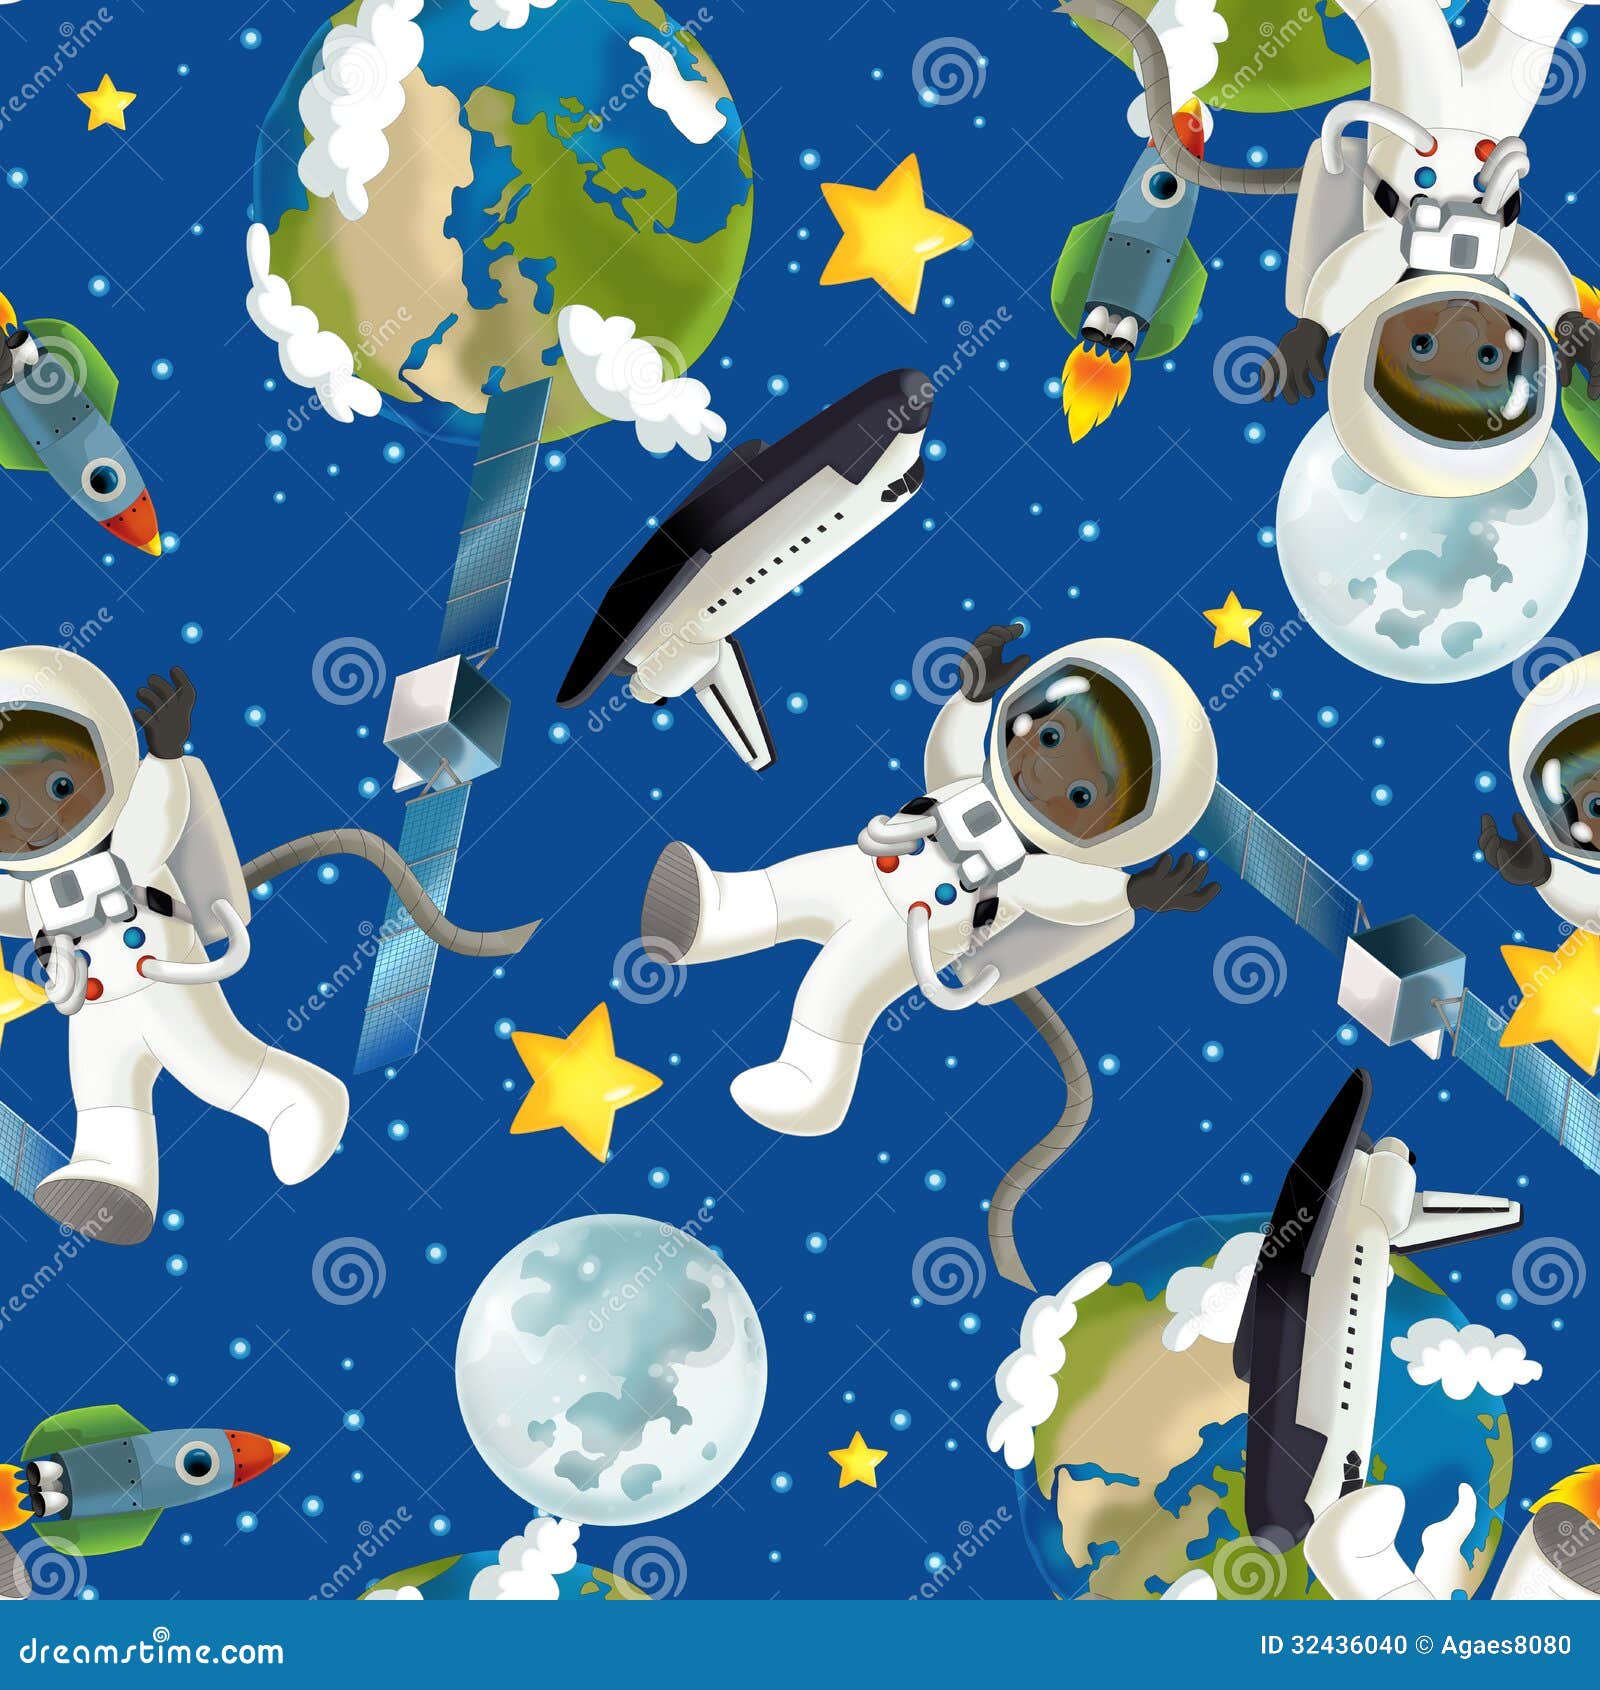 Семейное путешествие в космос. Рисунок семейное путешествие в космос. Космическое путешествие флэт. Космическое путешествие чип 2016. Отметь какой фон подойдет к космическому путешествию.